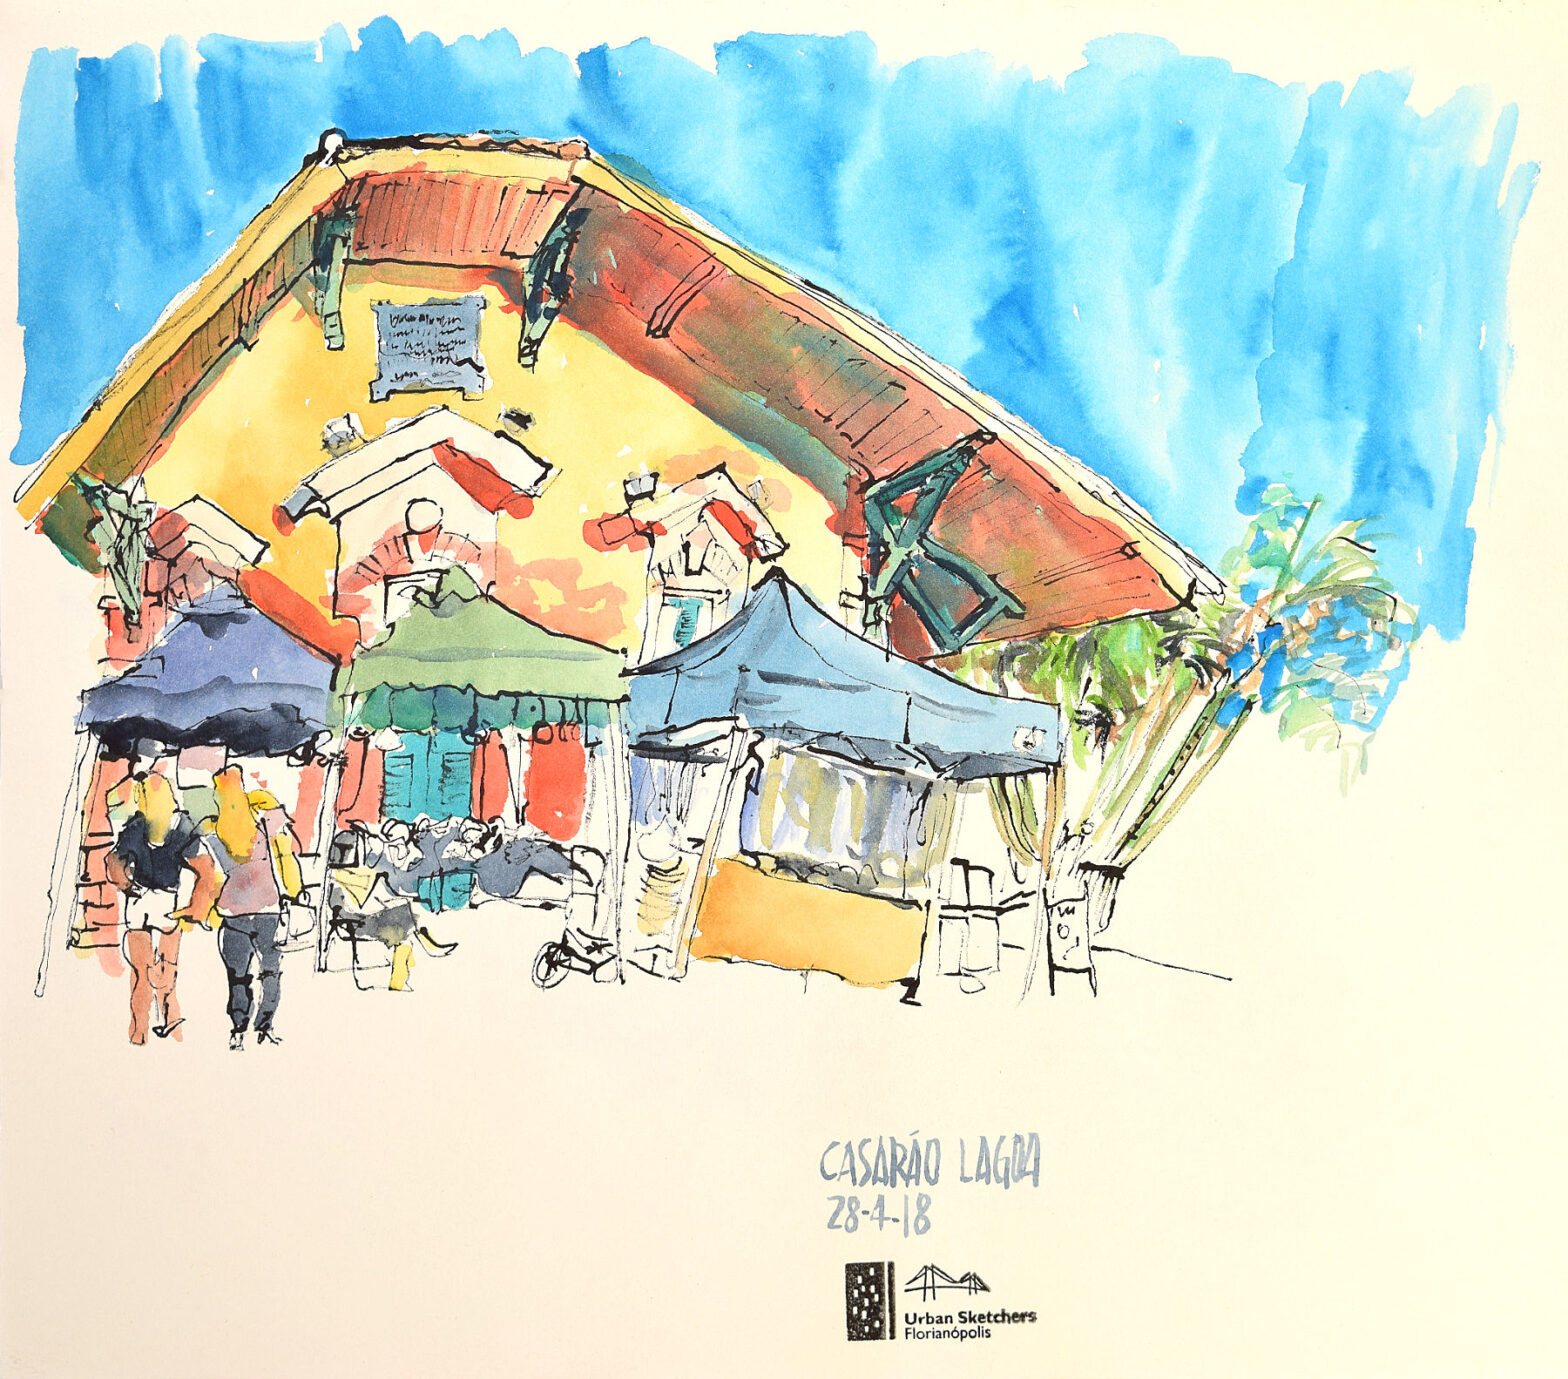 Desenho em nanquim colorido com aquarela mostrando a fachada de trás do Casarão da Lagoa, com ênfase na estrutura do telhado e no céu azul ao fundo. Em primeiro plano, barracas de artesãos